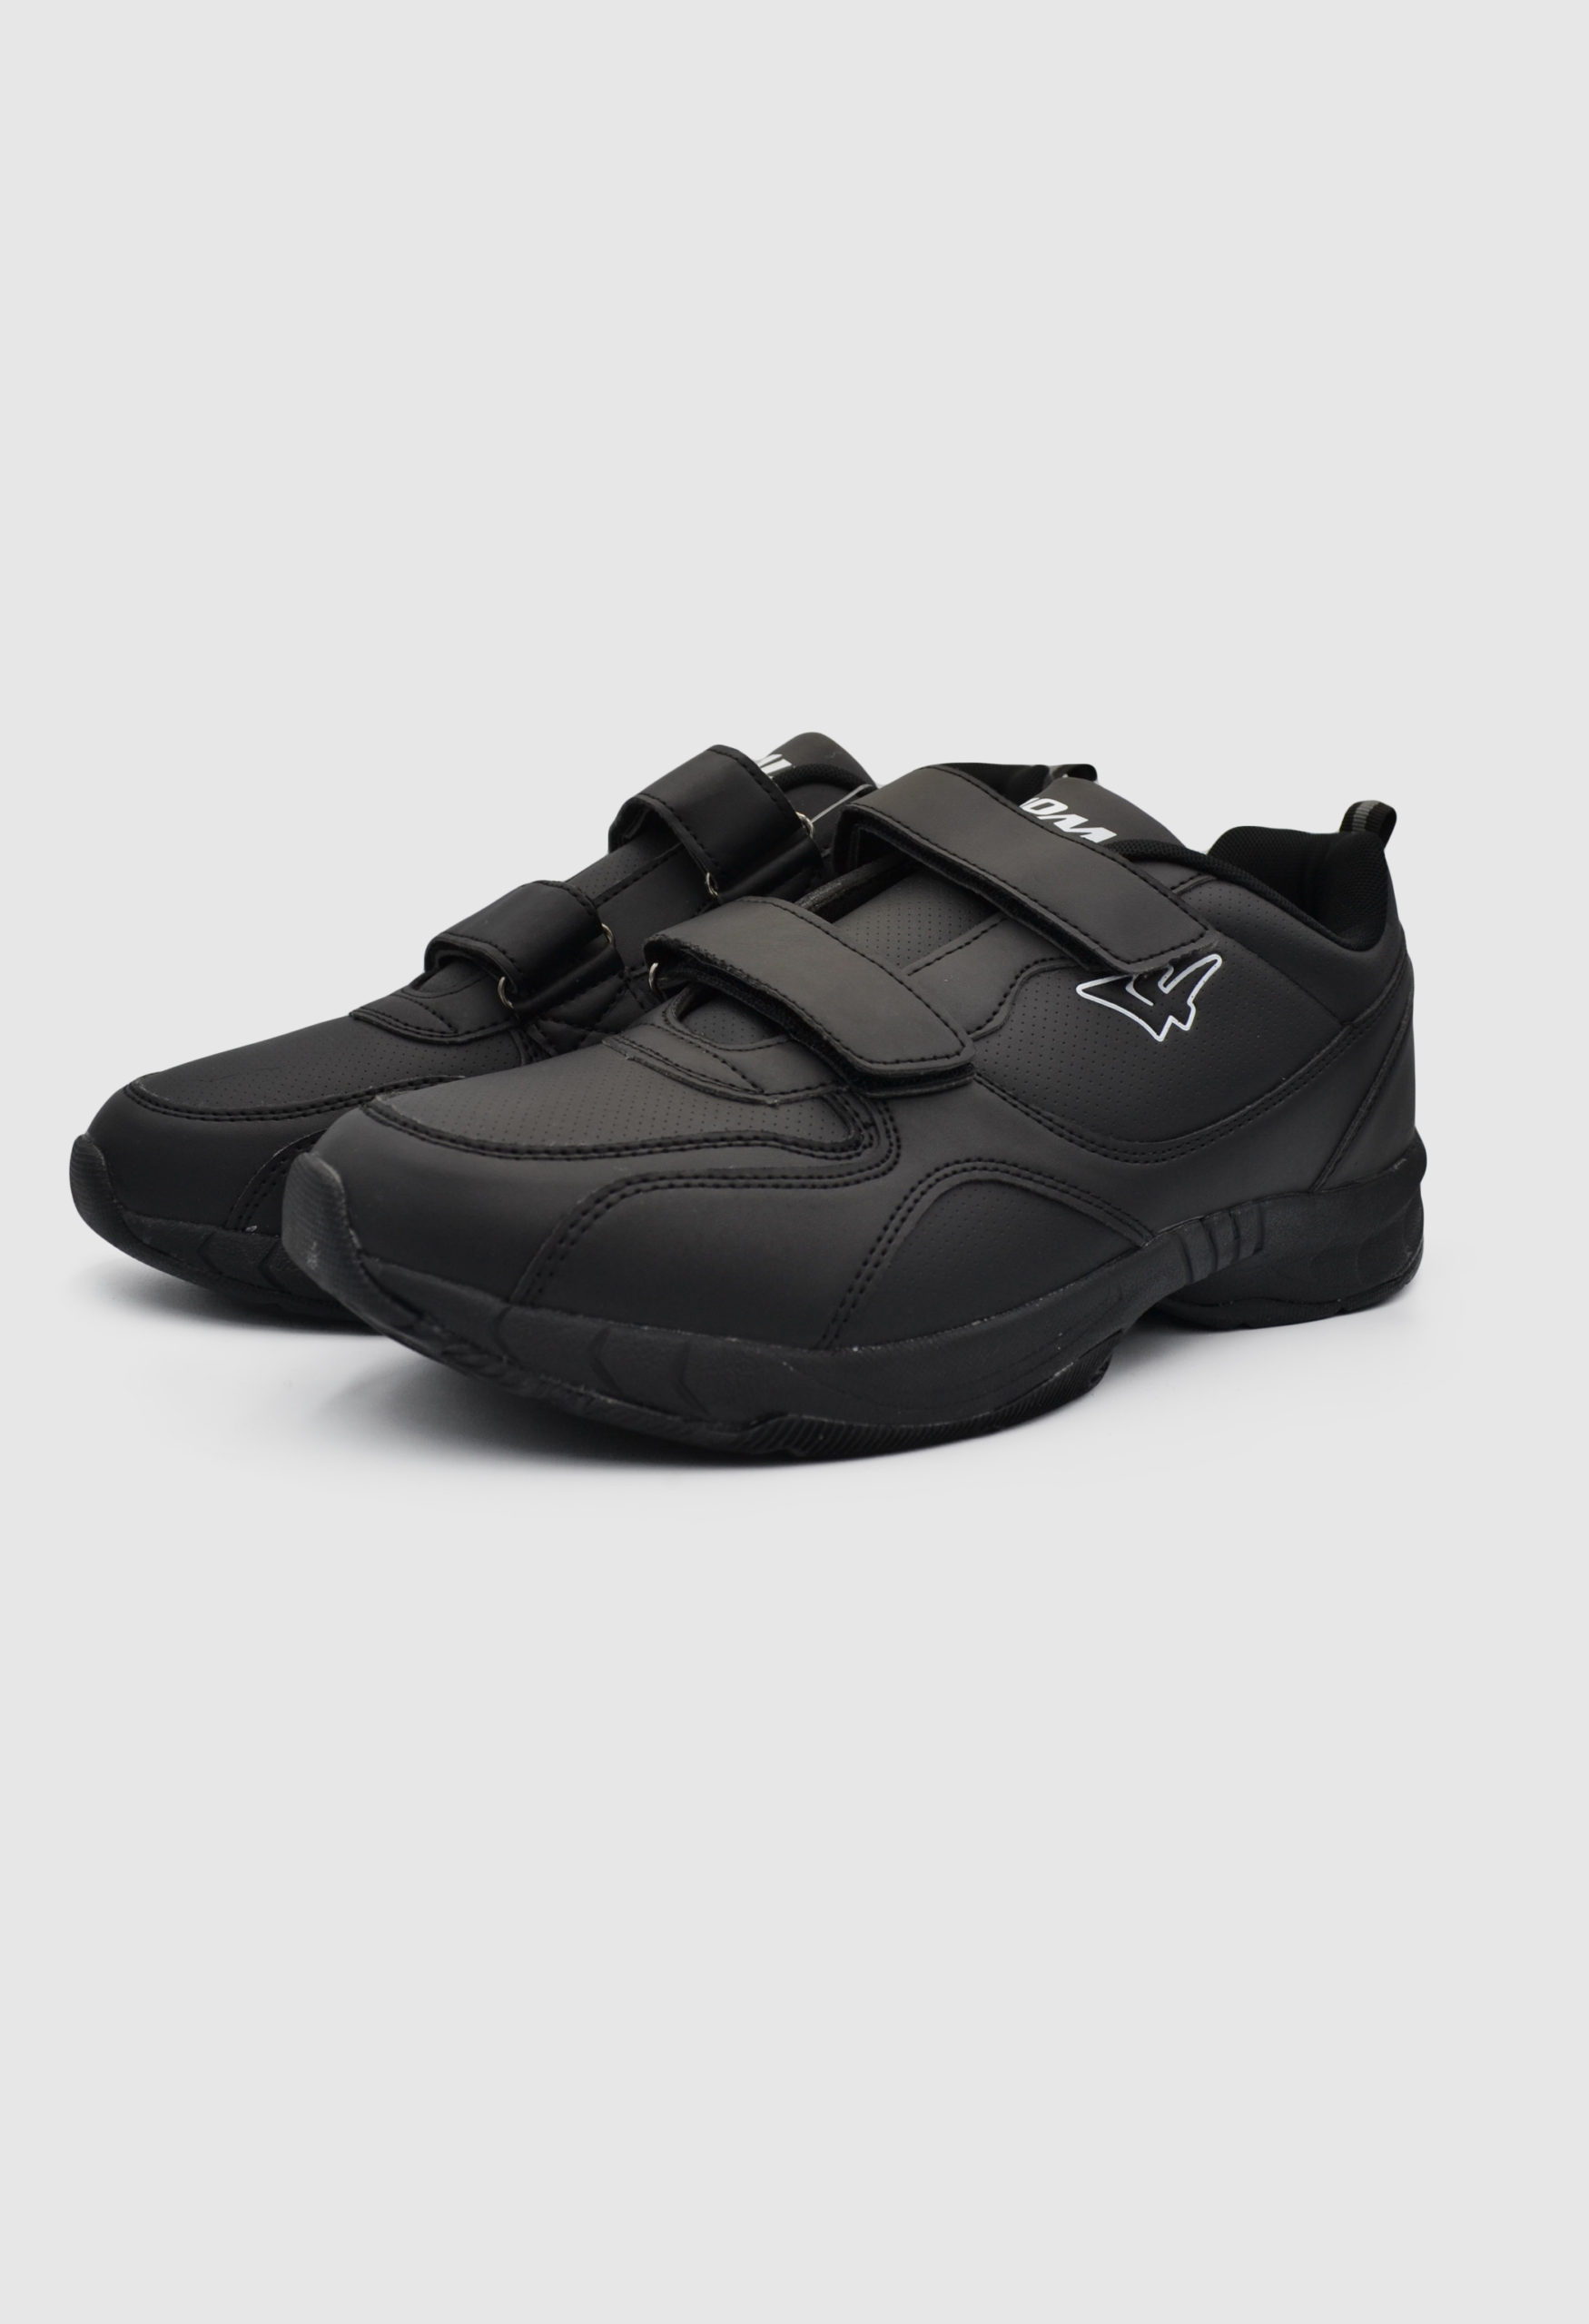 Ανδρικά Sneakers Μαύρο / 7615496 ΑΘΛΗΤΙΚΑ & SNEAKERS joya.gr